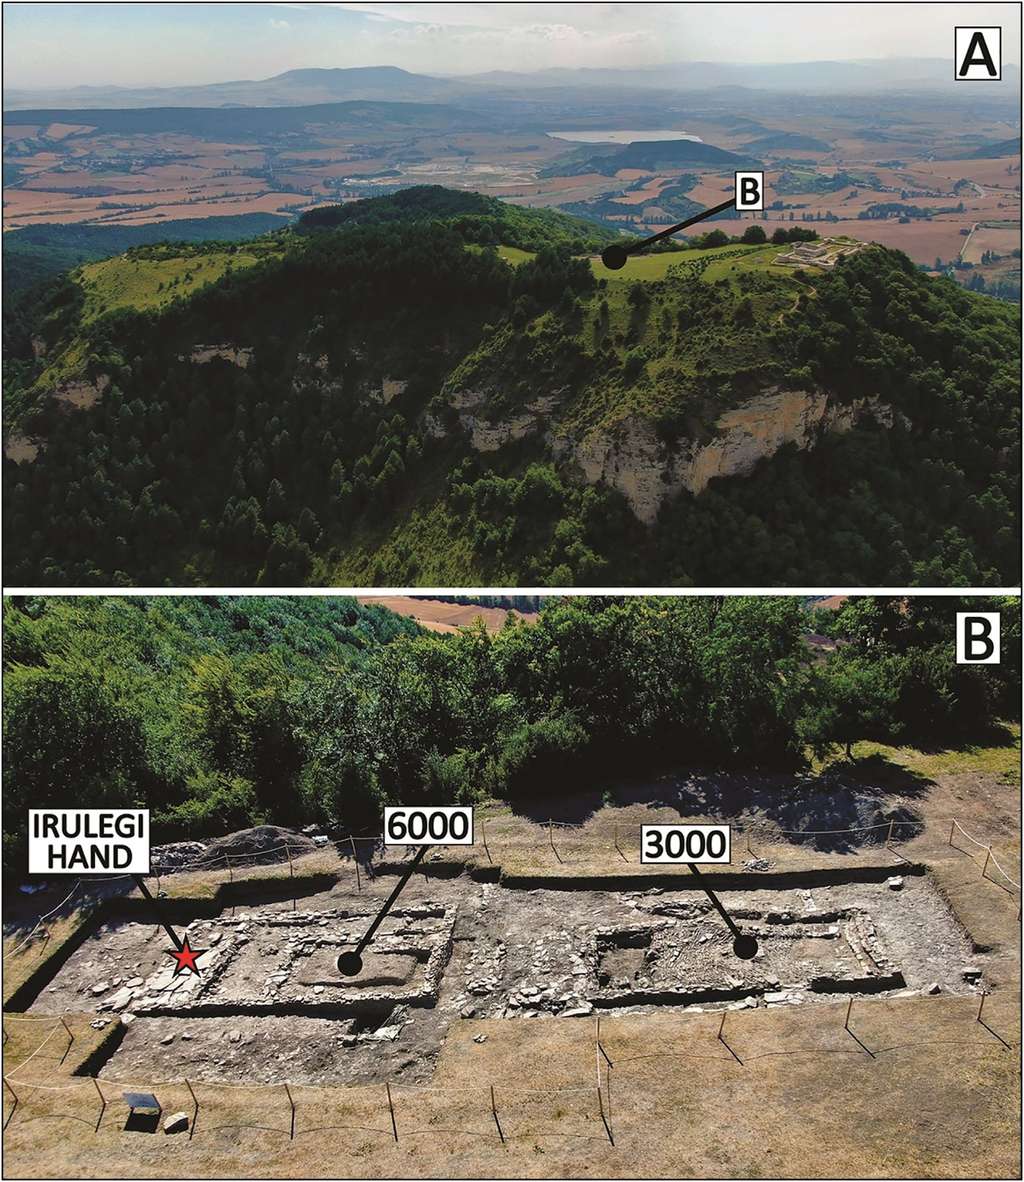 Photographie aérienne du site de l'Irulegi. En B, la zone de fouilles avec l'emplacement de la main d'Irulegi dans le bâtiment 6 000. © Cambridge University Press